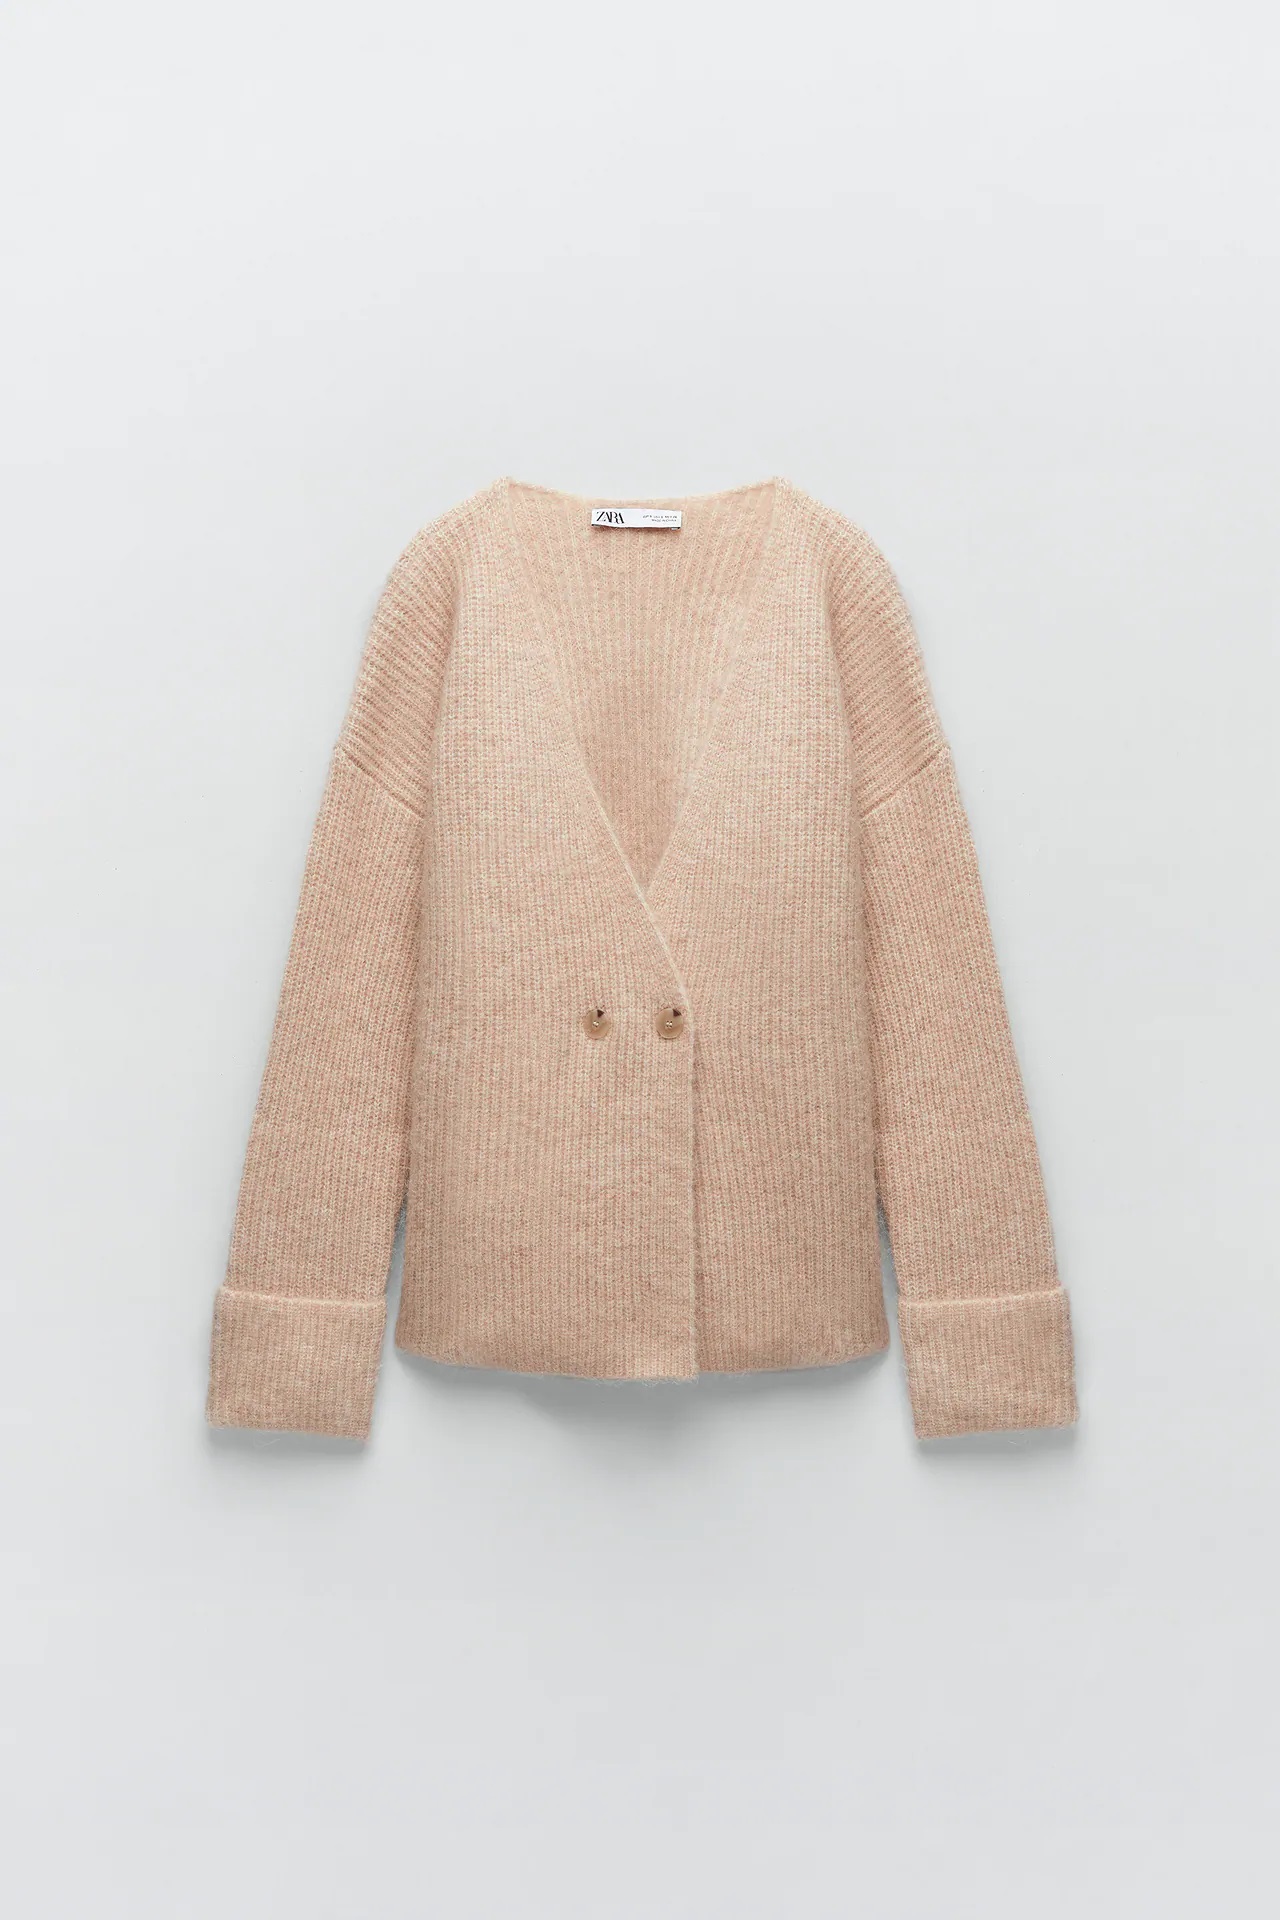 Amelia Bono personifica la sencillez y la comodidad con esta chaqueta de Zara